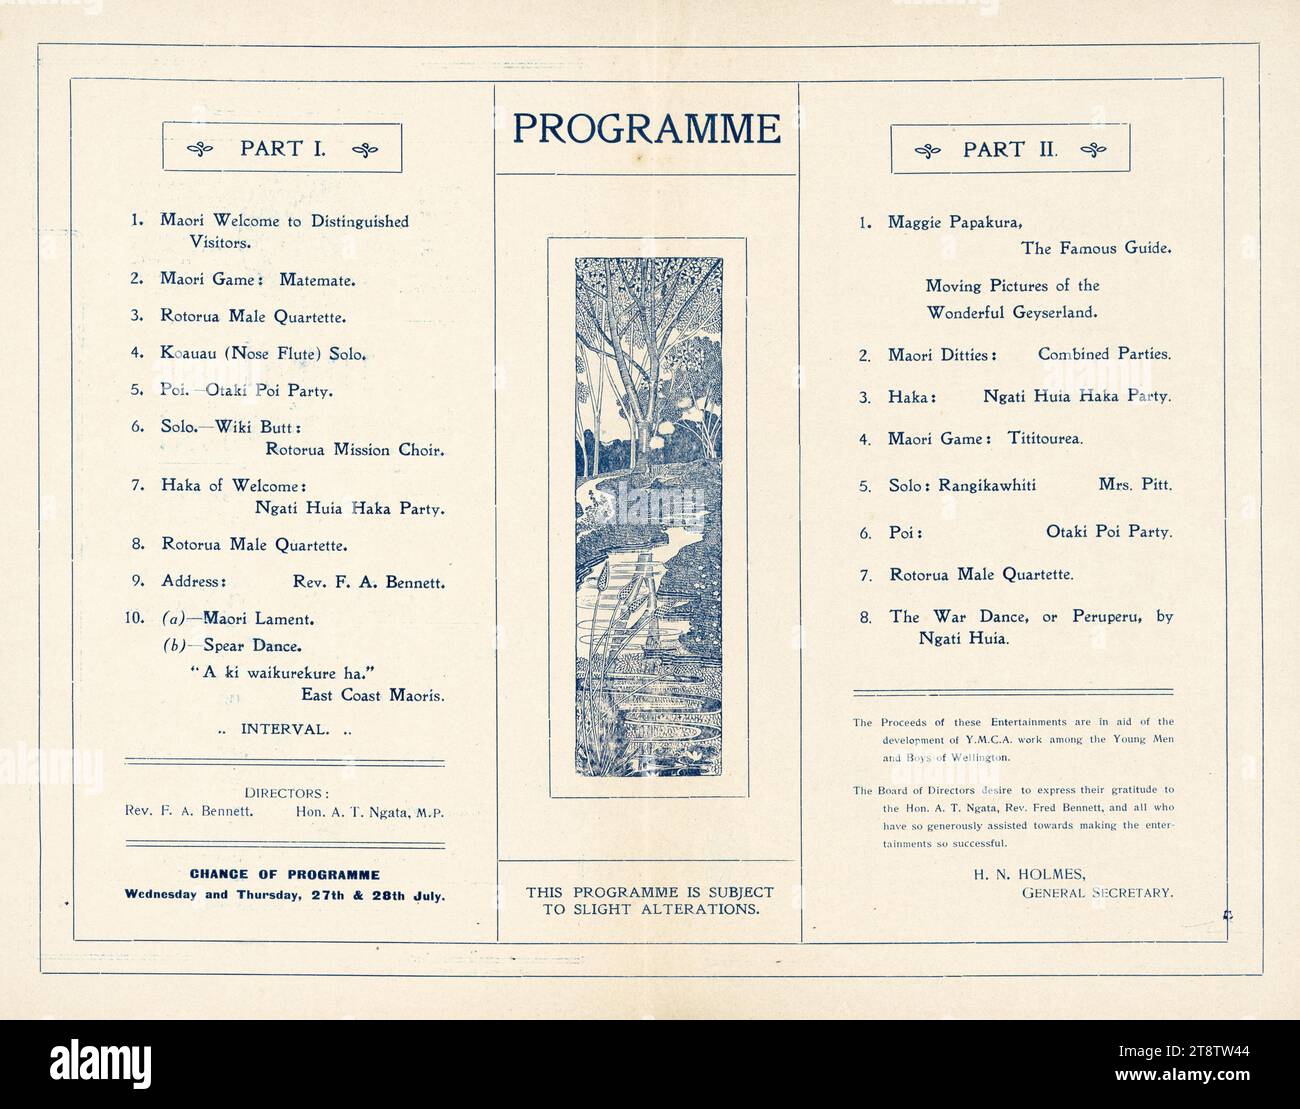 Divertissement maori, Hôtel de ville, Wellington, Nouvelle-Zélande, mardi, 26 juillet 1910. Partie I et partie II du programme 1910, le Rotorua Maori Mission Choir a été assisté par Otaki POI Party, Ngati Huia Haka Party et East Coast Waiata et Haka Party. Maggie Papakura et Mrs Pitt ont joué en solo. Les articles comprenaient les jeux maoris Matemate et Tititourea, la Rotorua Male Quartette, un solo Koauau (flûte de nez), des danses POI, des chants de lamentation et une danse de guerre ou Peruperu de Ngati Huia Banque D'Images